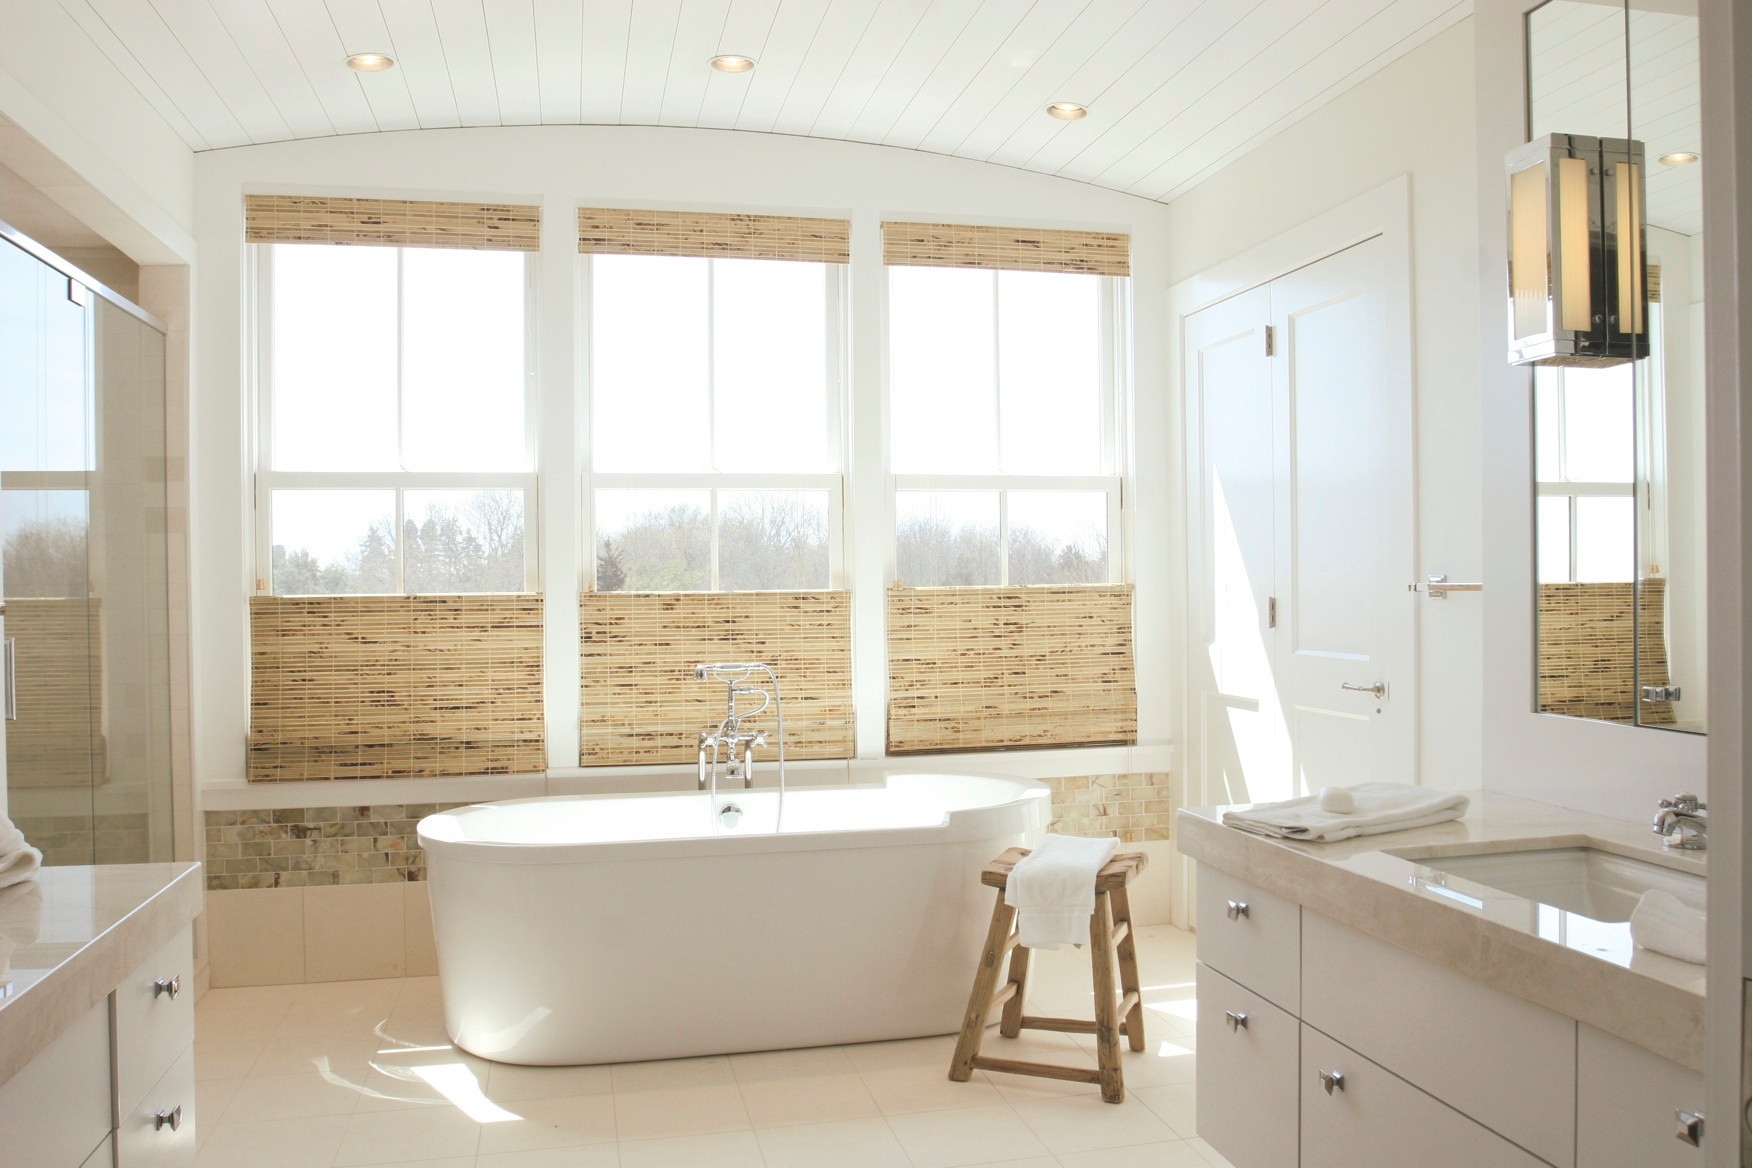 Ванна с большим окном. Небольшая ванная с окном. Санузел с окном. Окно в ванной комнате в частном доме. Интерьер ванной с окном.